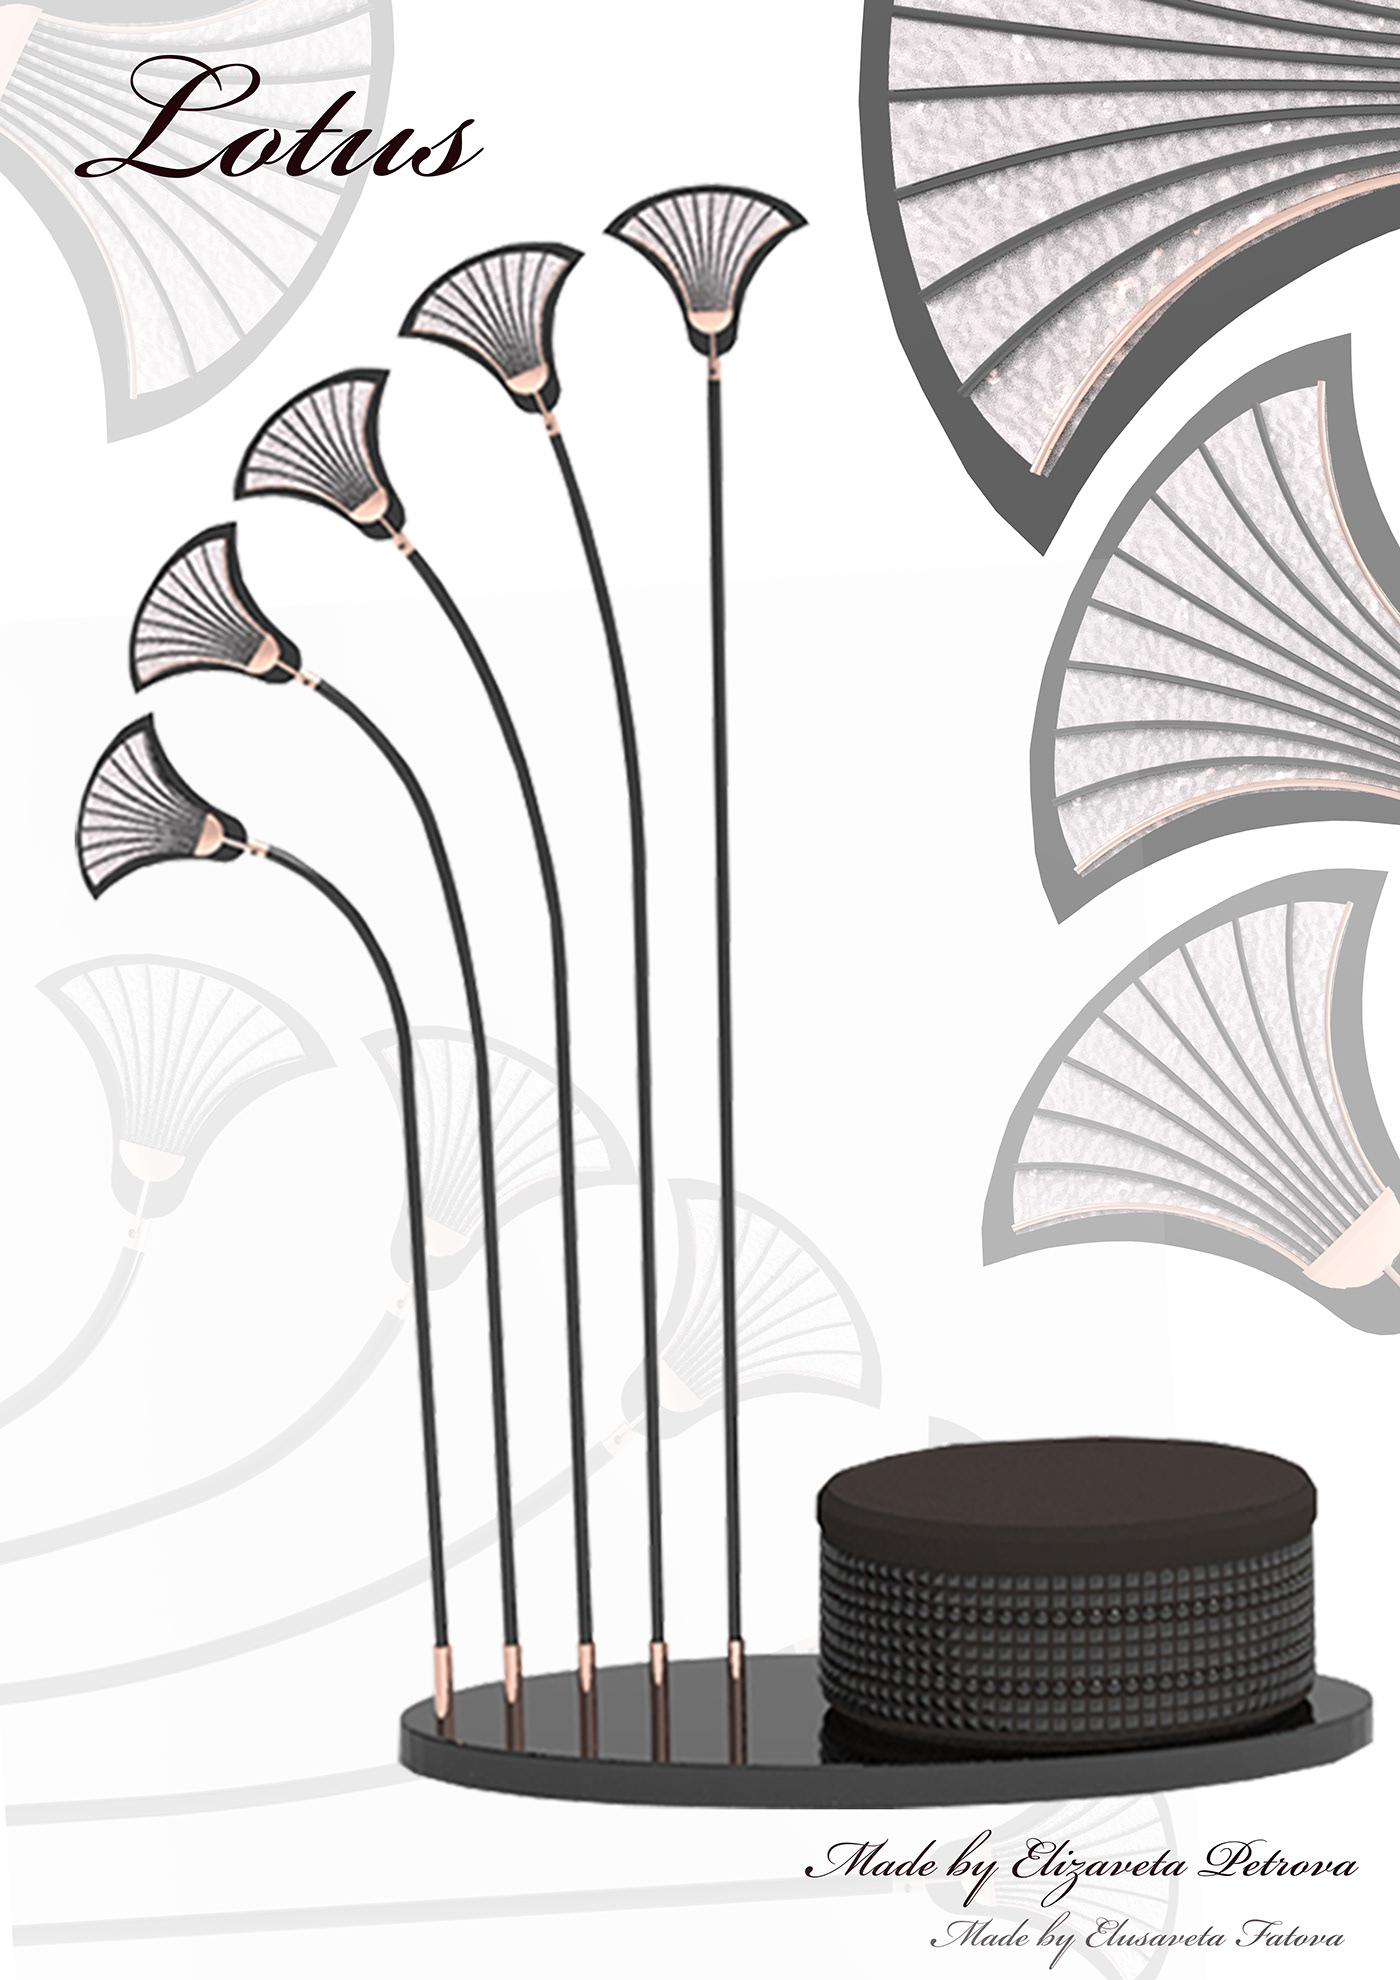 design furniture вешалка Вешалка для одежды визуализация дизайн дизайн интерьера дизайн мебели интерьер мебель